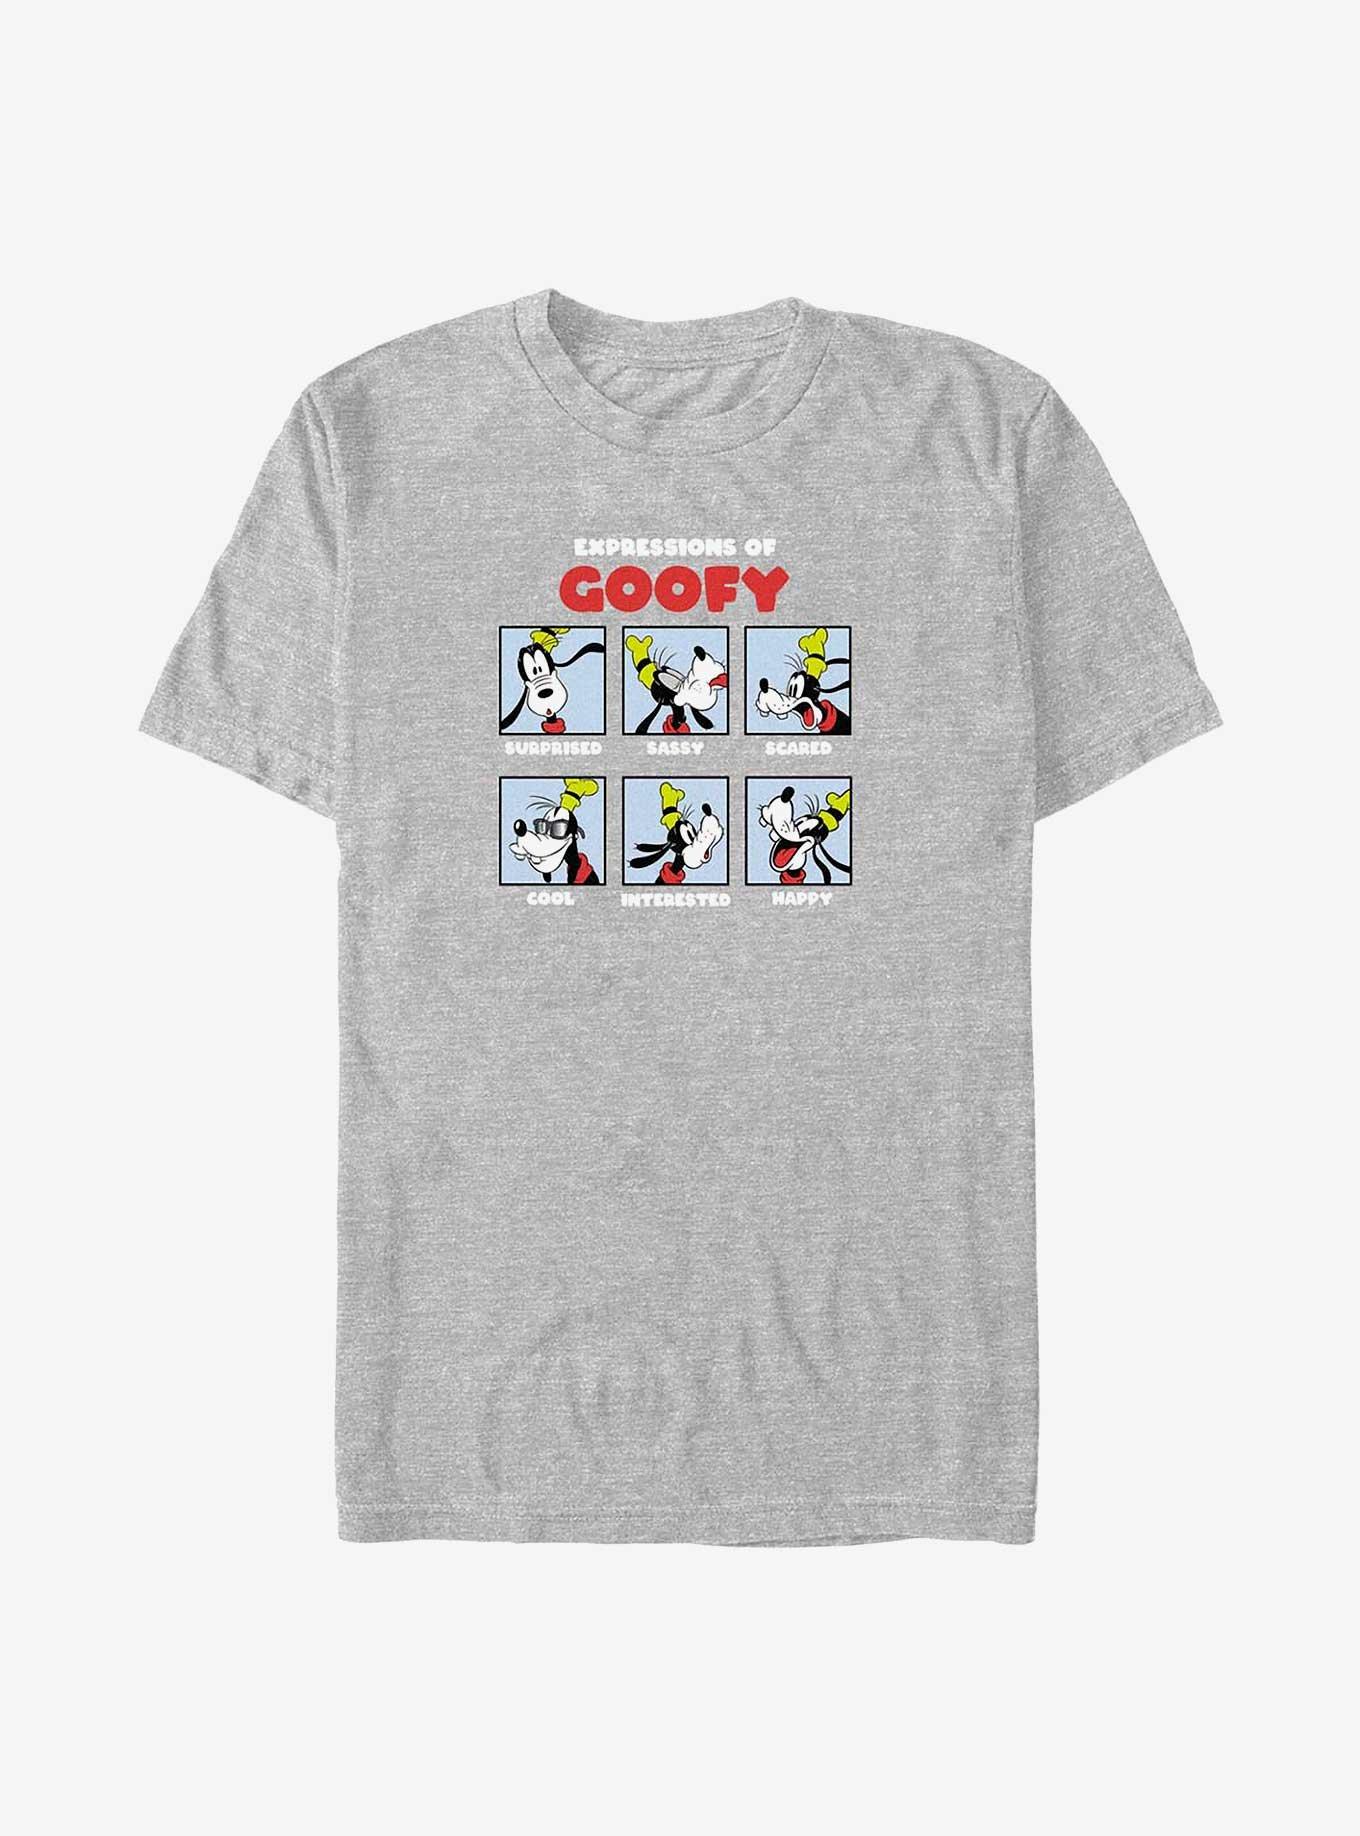 Disney Goofy Expressions of Goofy Big & Tall T-Shirt, ATH HTR, hi-res